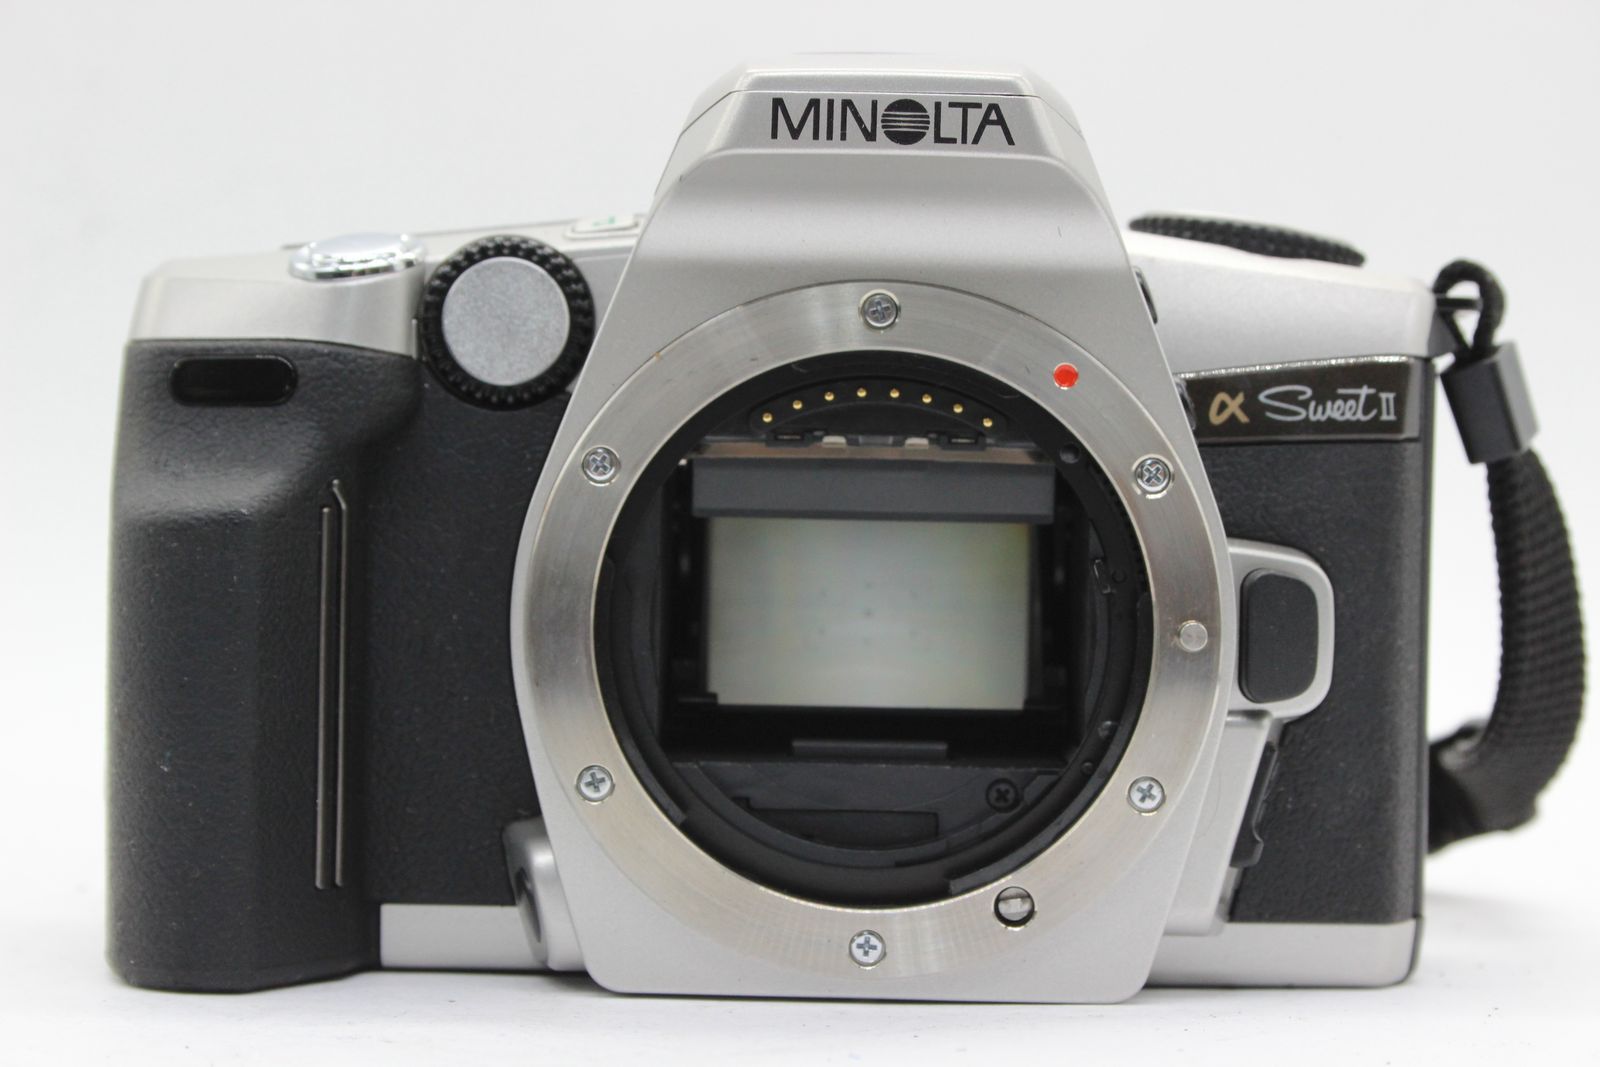 MINOLTA α-sweet ii シルバー フィルムカメラ レンズキット - カメラ